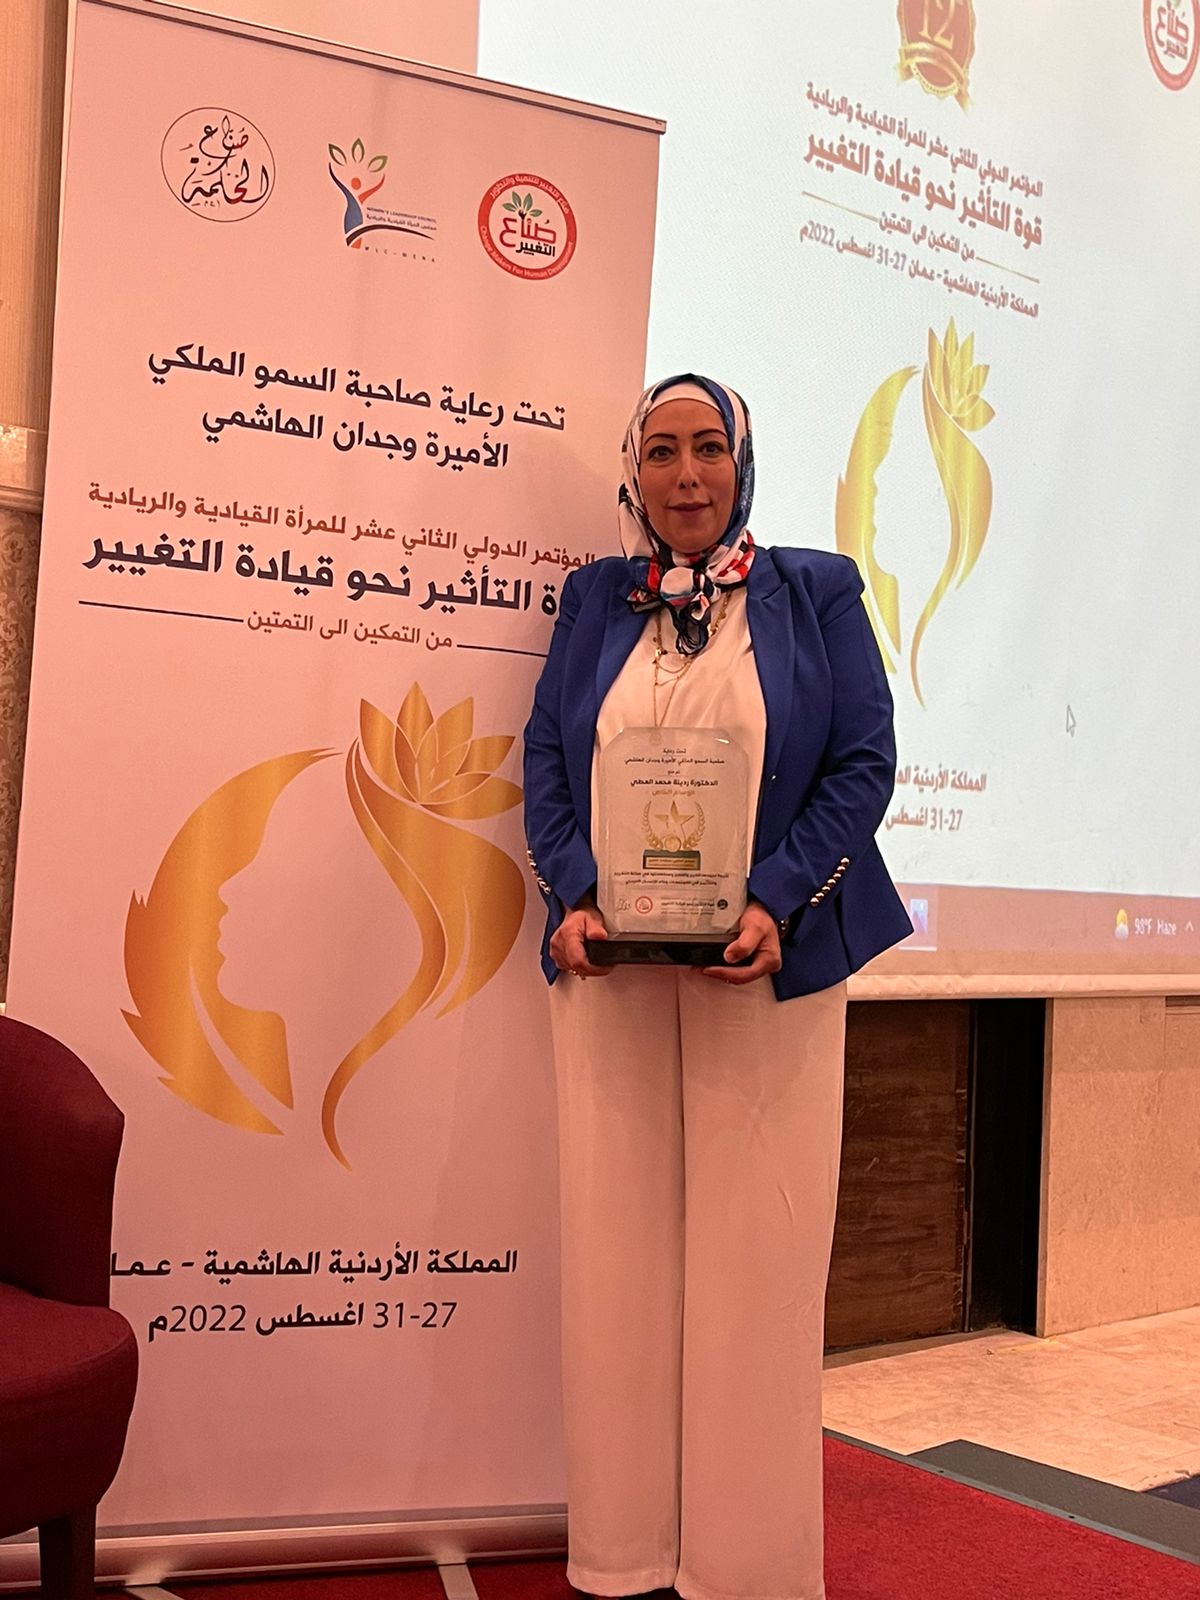 النائب السابق الدكتورة ردينة العطي تفوز بالوسام البلاتيني الخاص لصانعات التغيير على مستوى الوطن العربي 